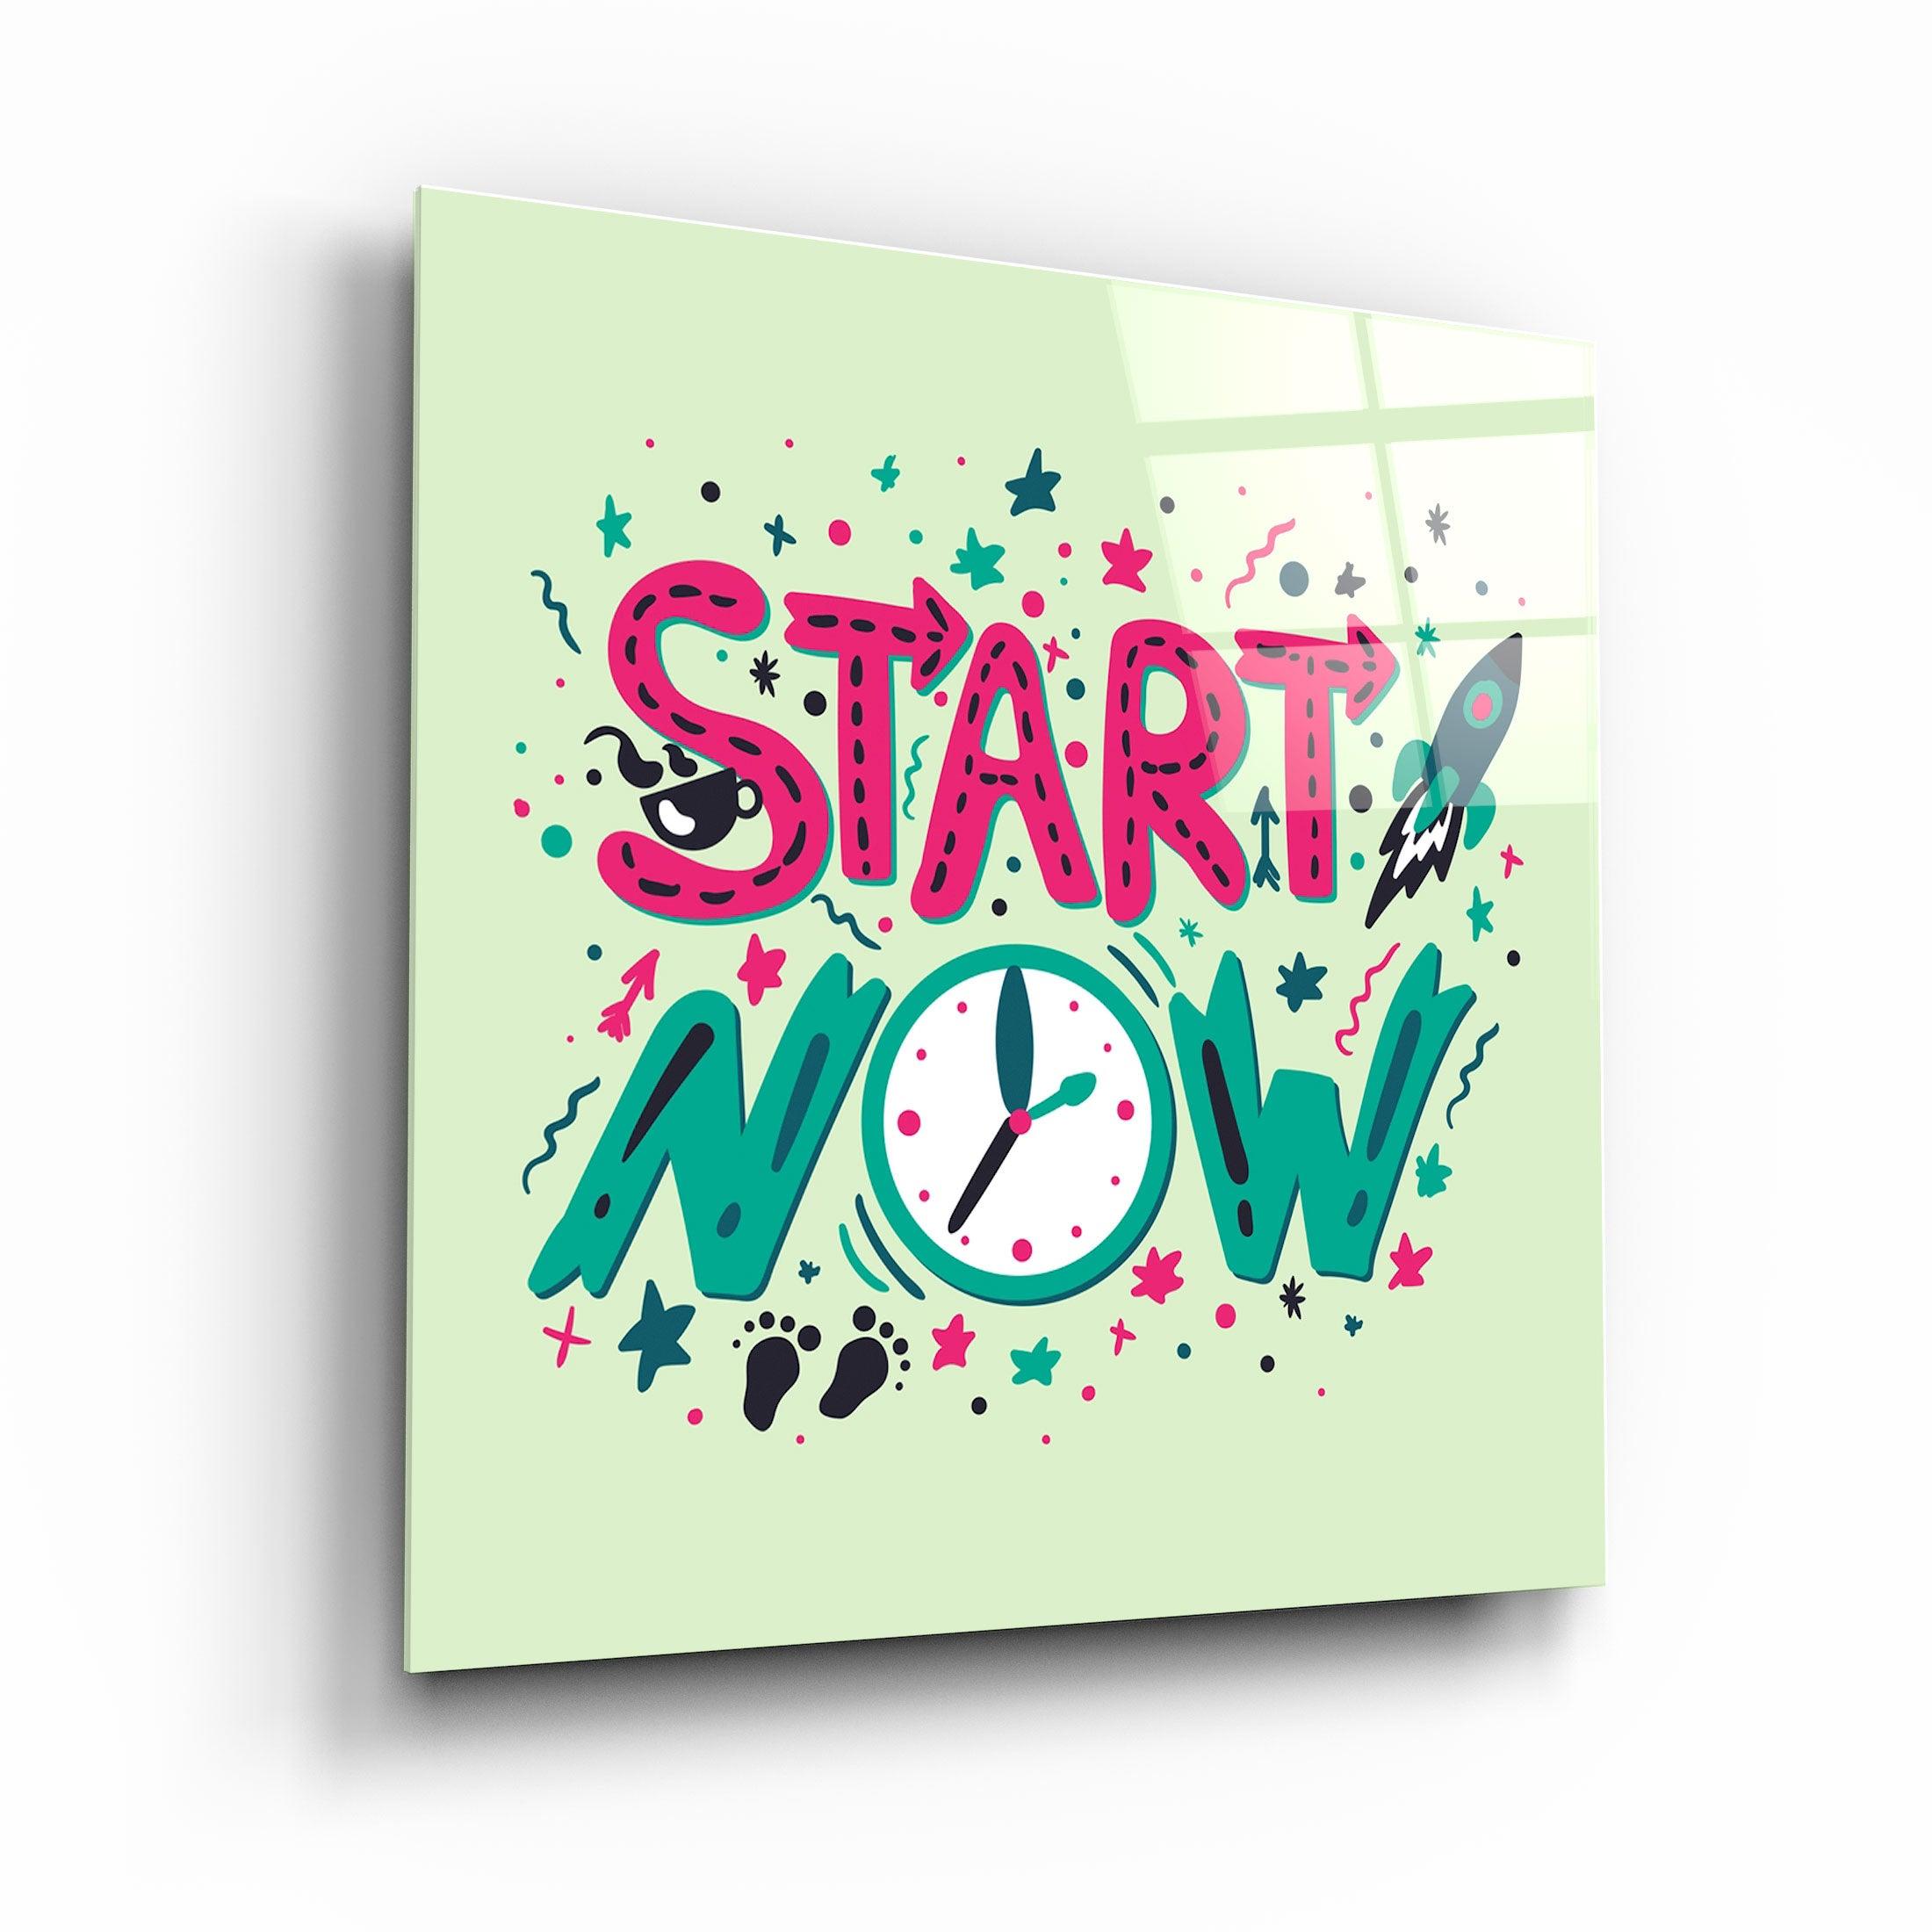 ・"Start Now"・Glass Wall Art - ArtDesigna Glass Printing Wall Art